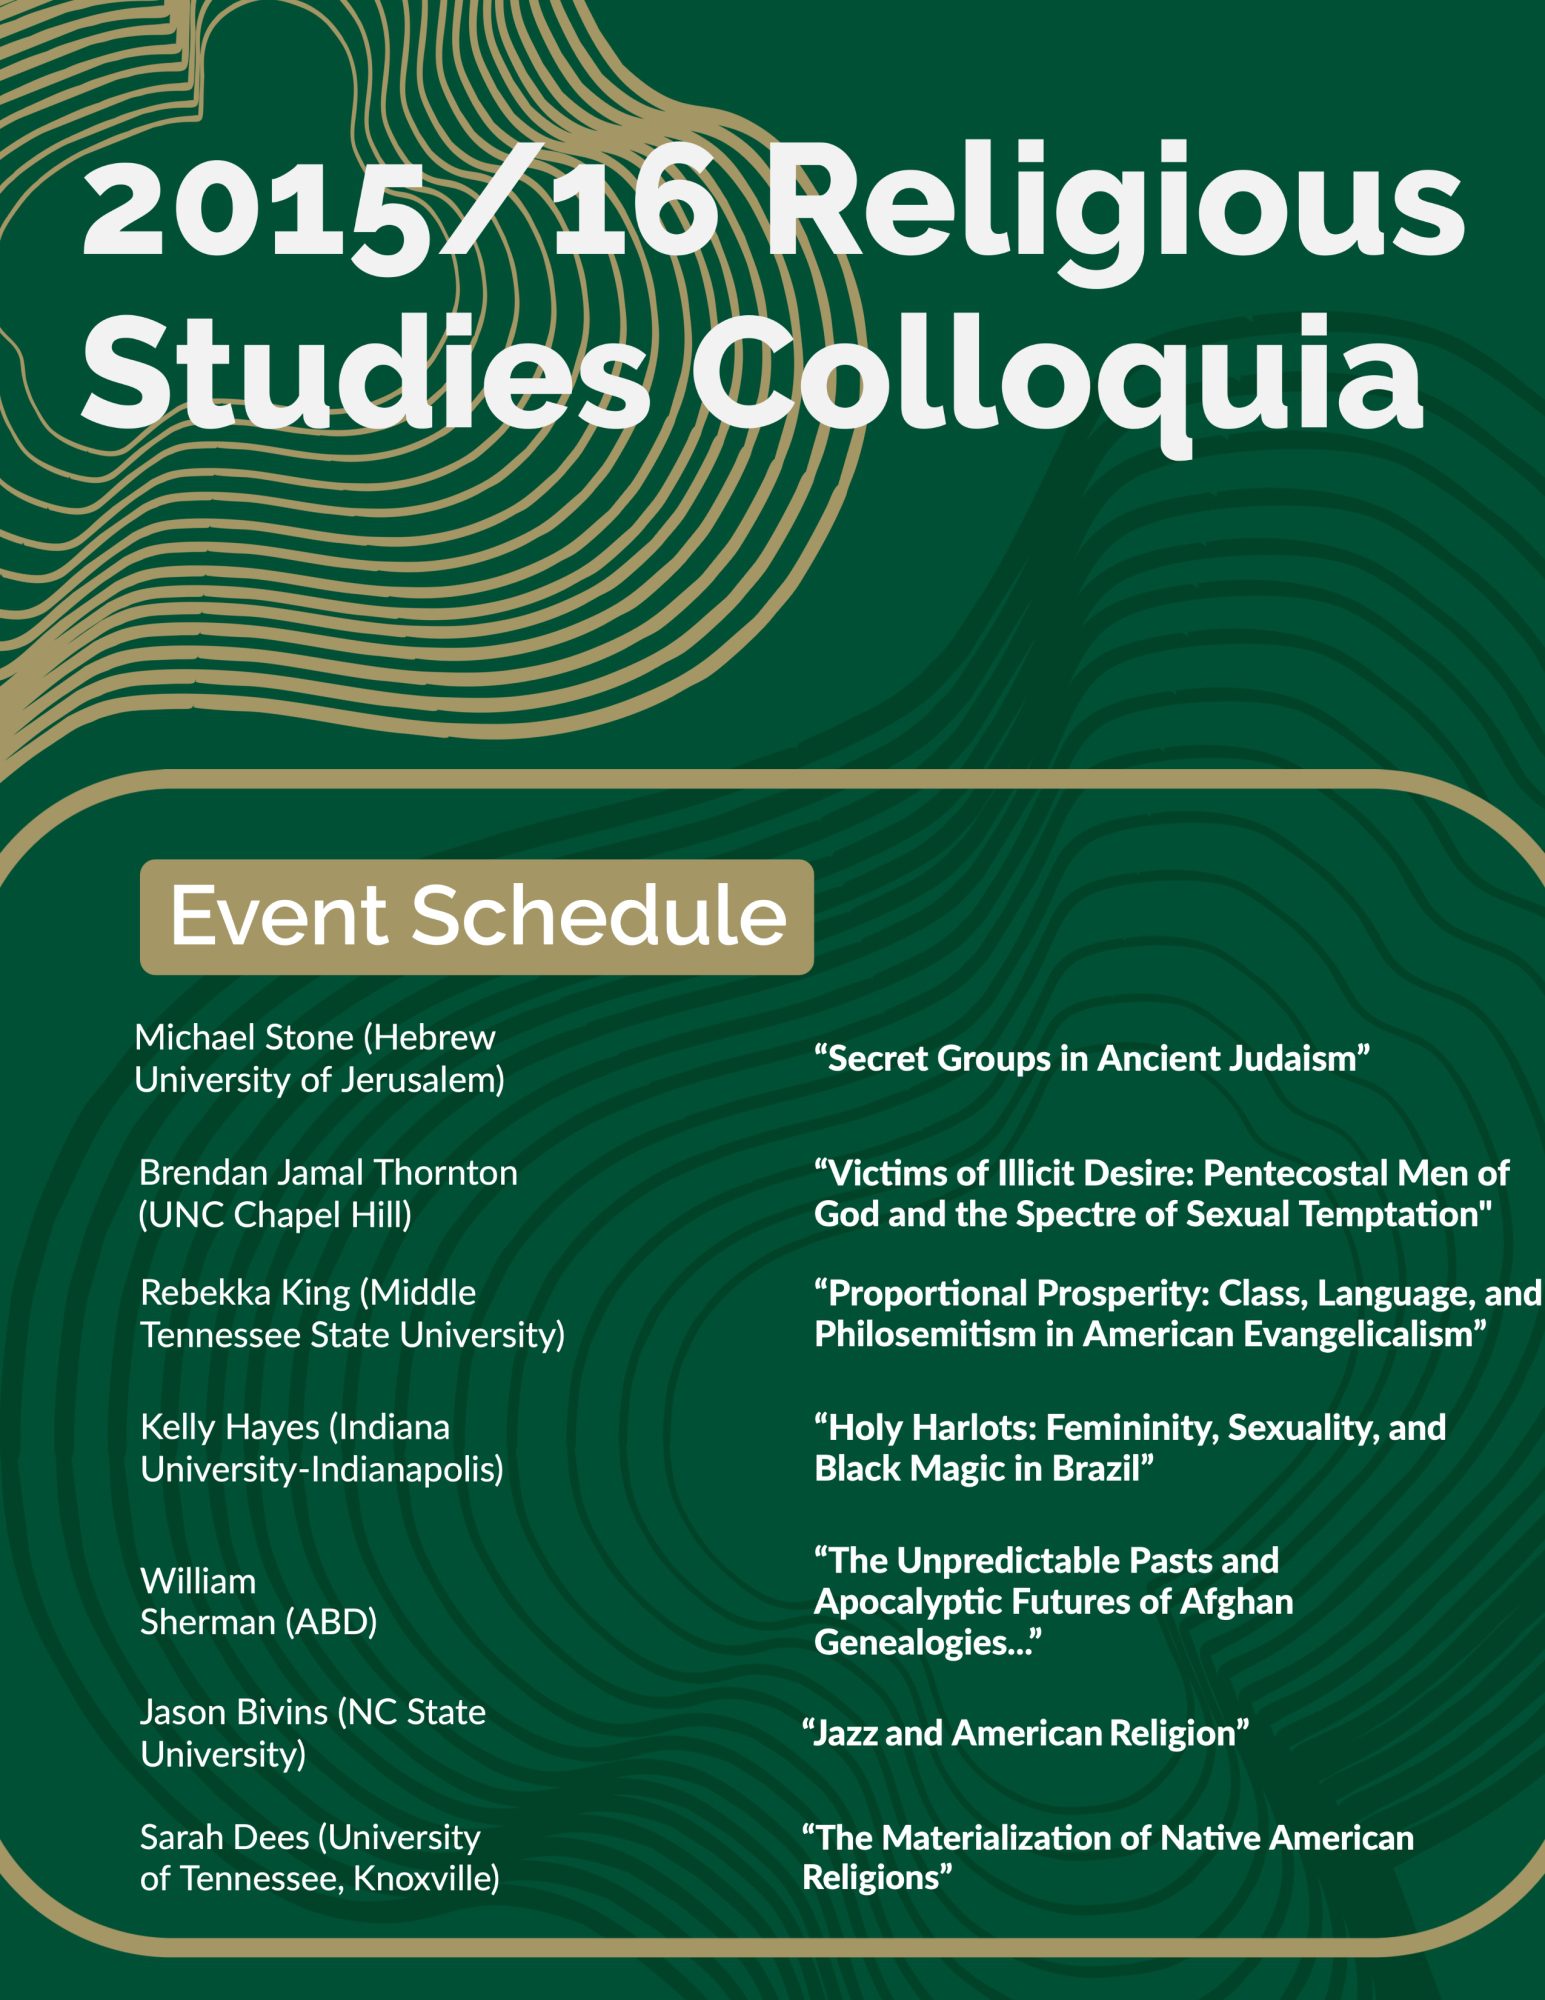 2015/16 Religious Studies Colloquia
Event Schedule